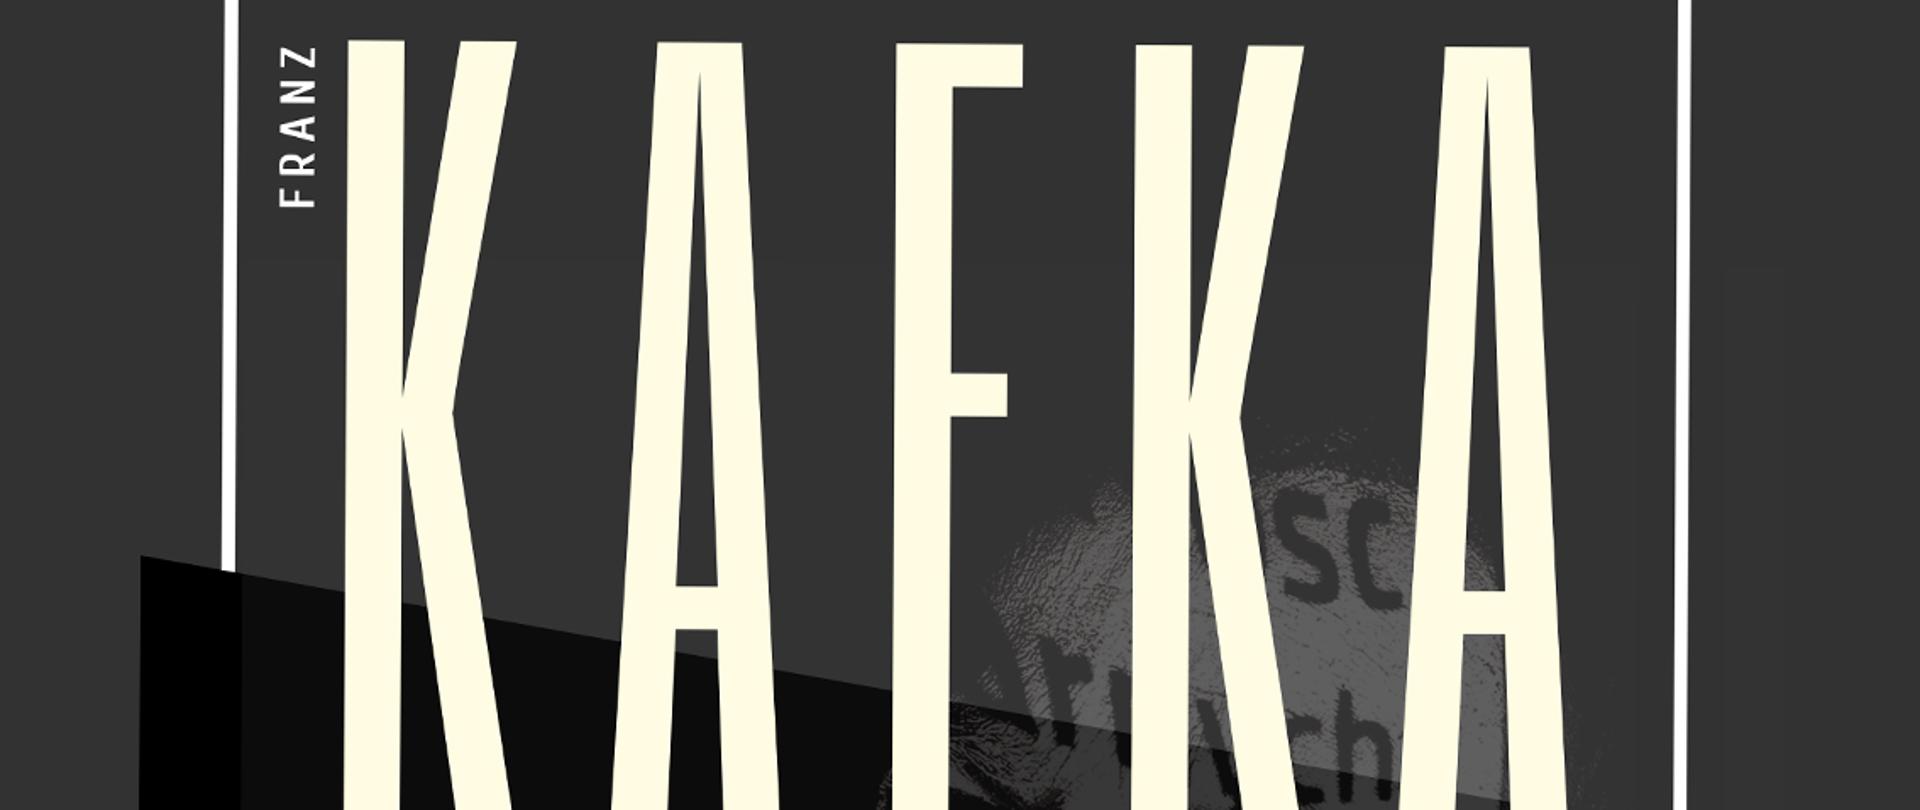 plakat informacyjny o wystawie Kafka - przełamywanie granic